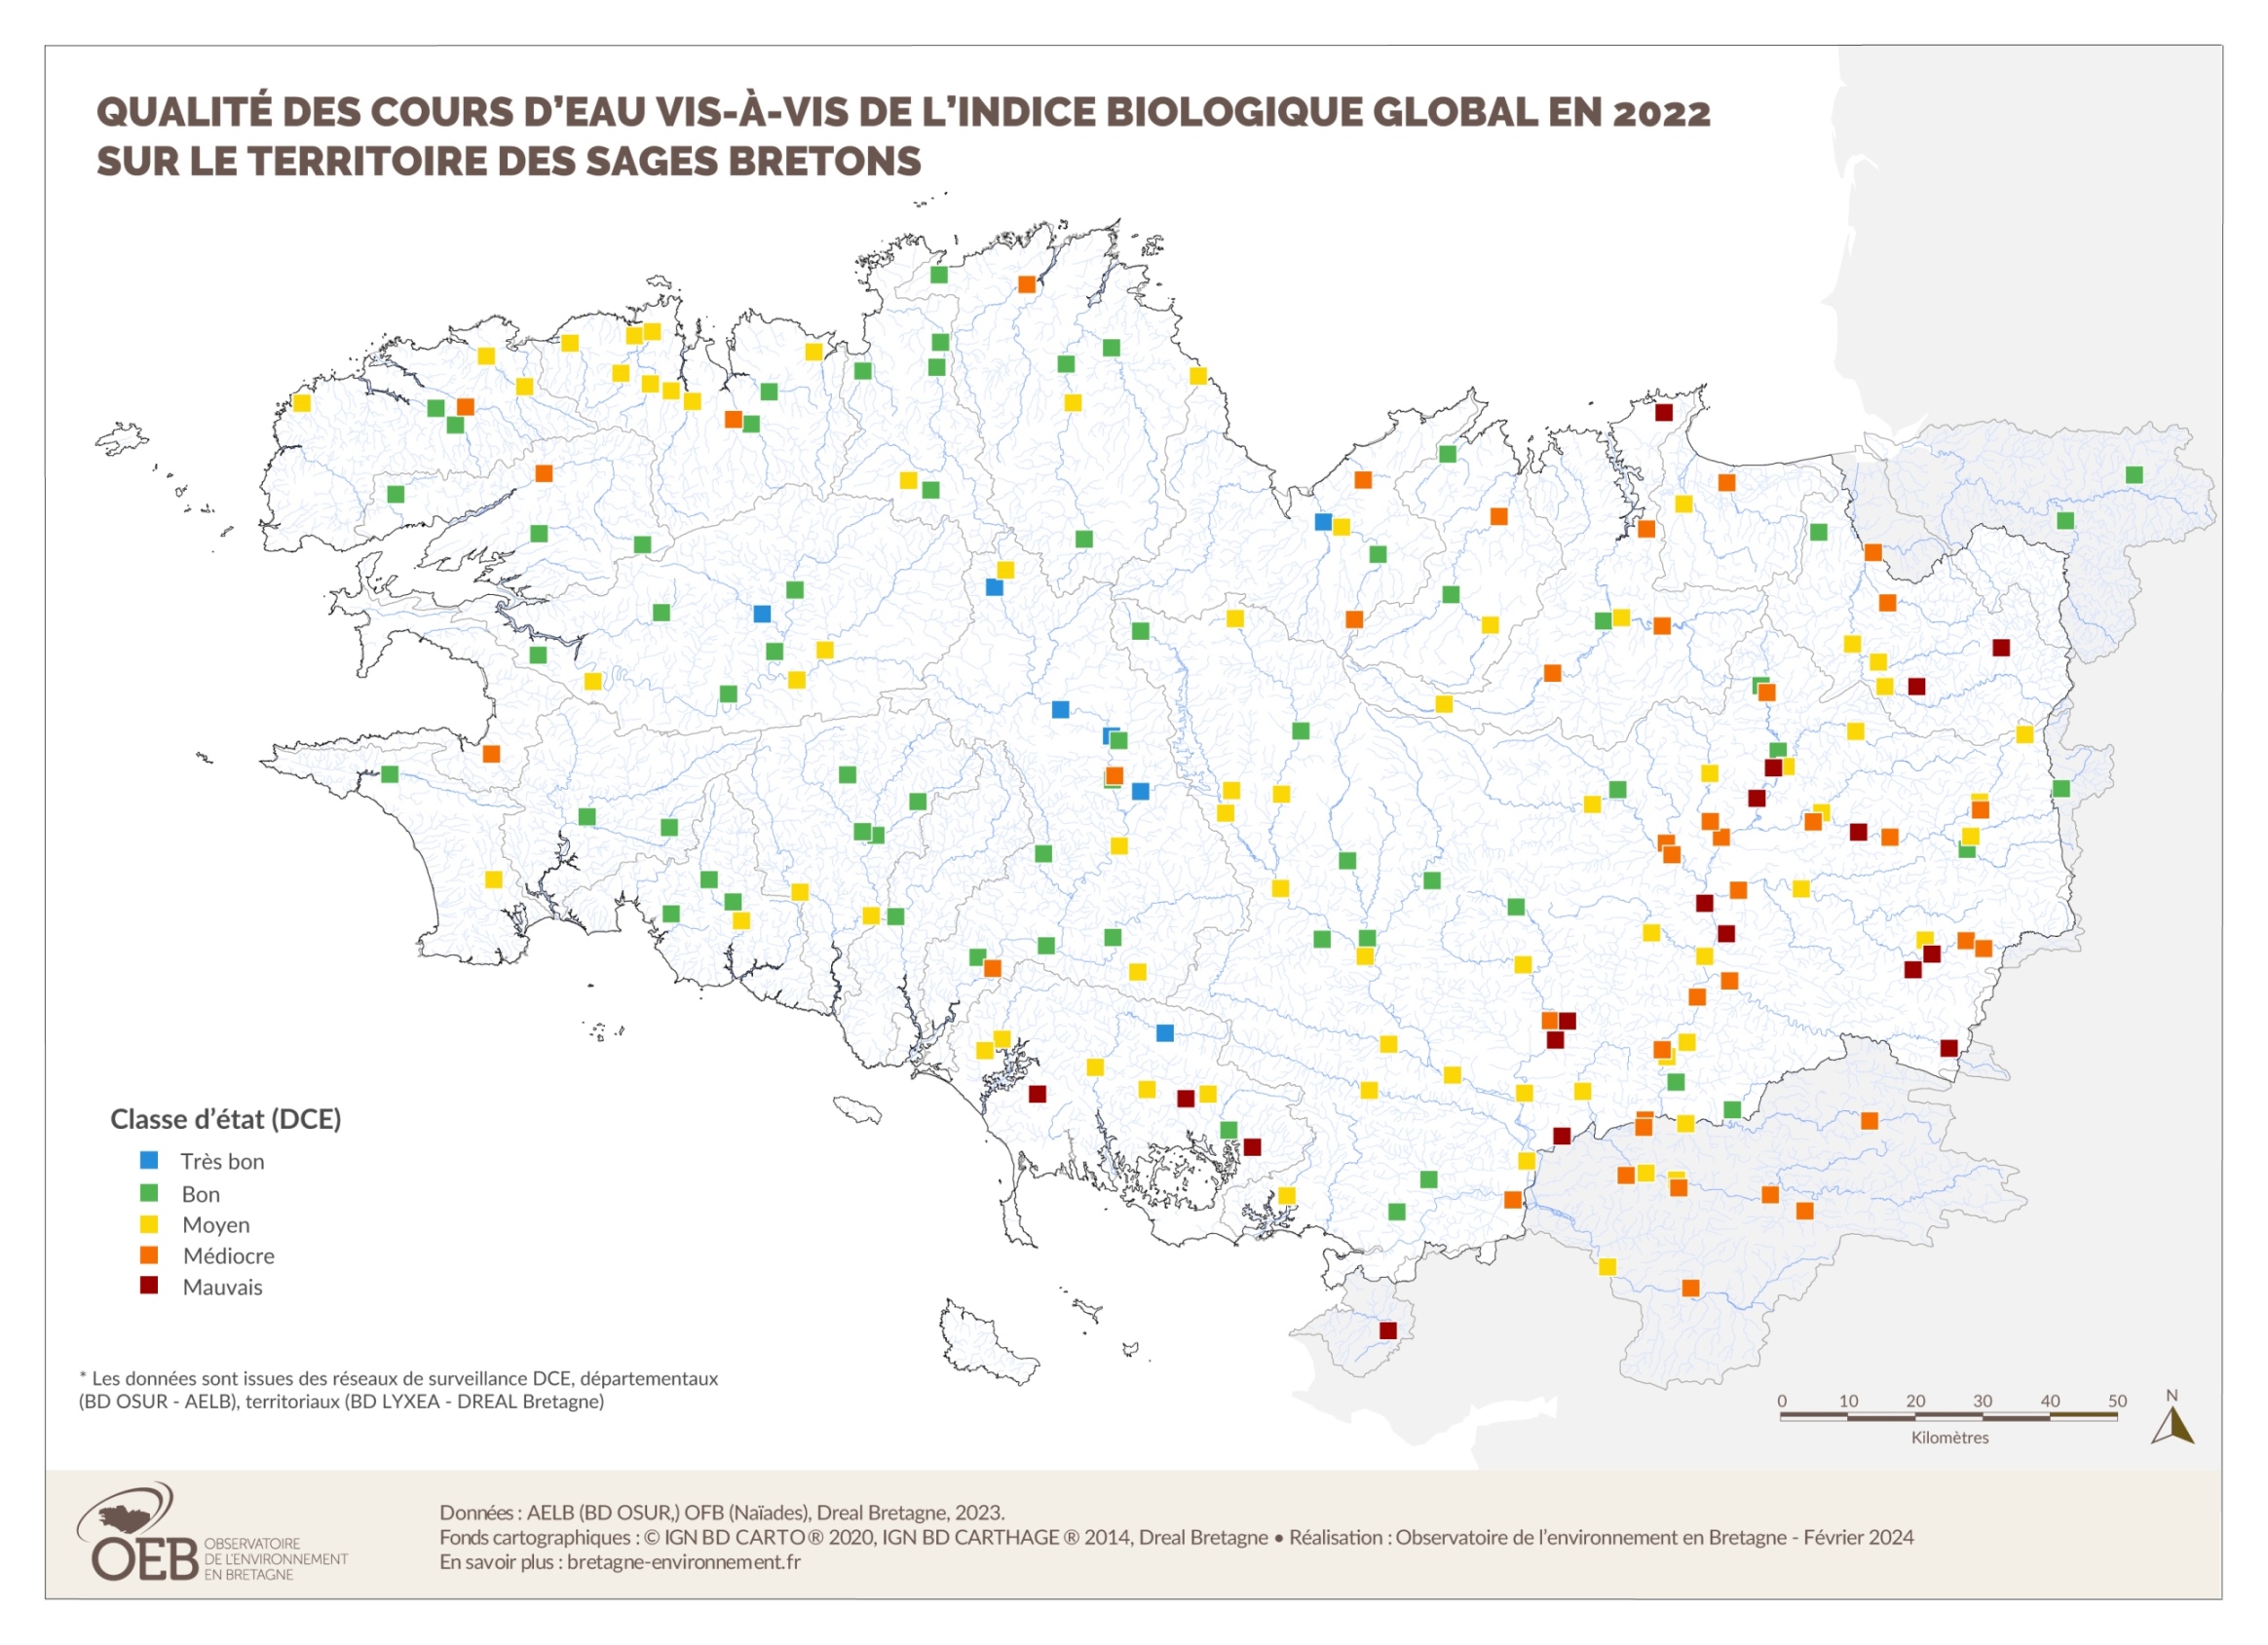 Qualité biologique globale des cours d'eau bretons en 2022